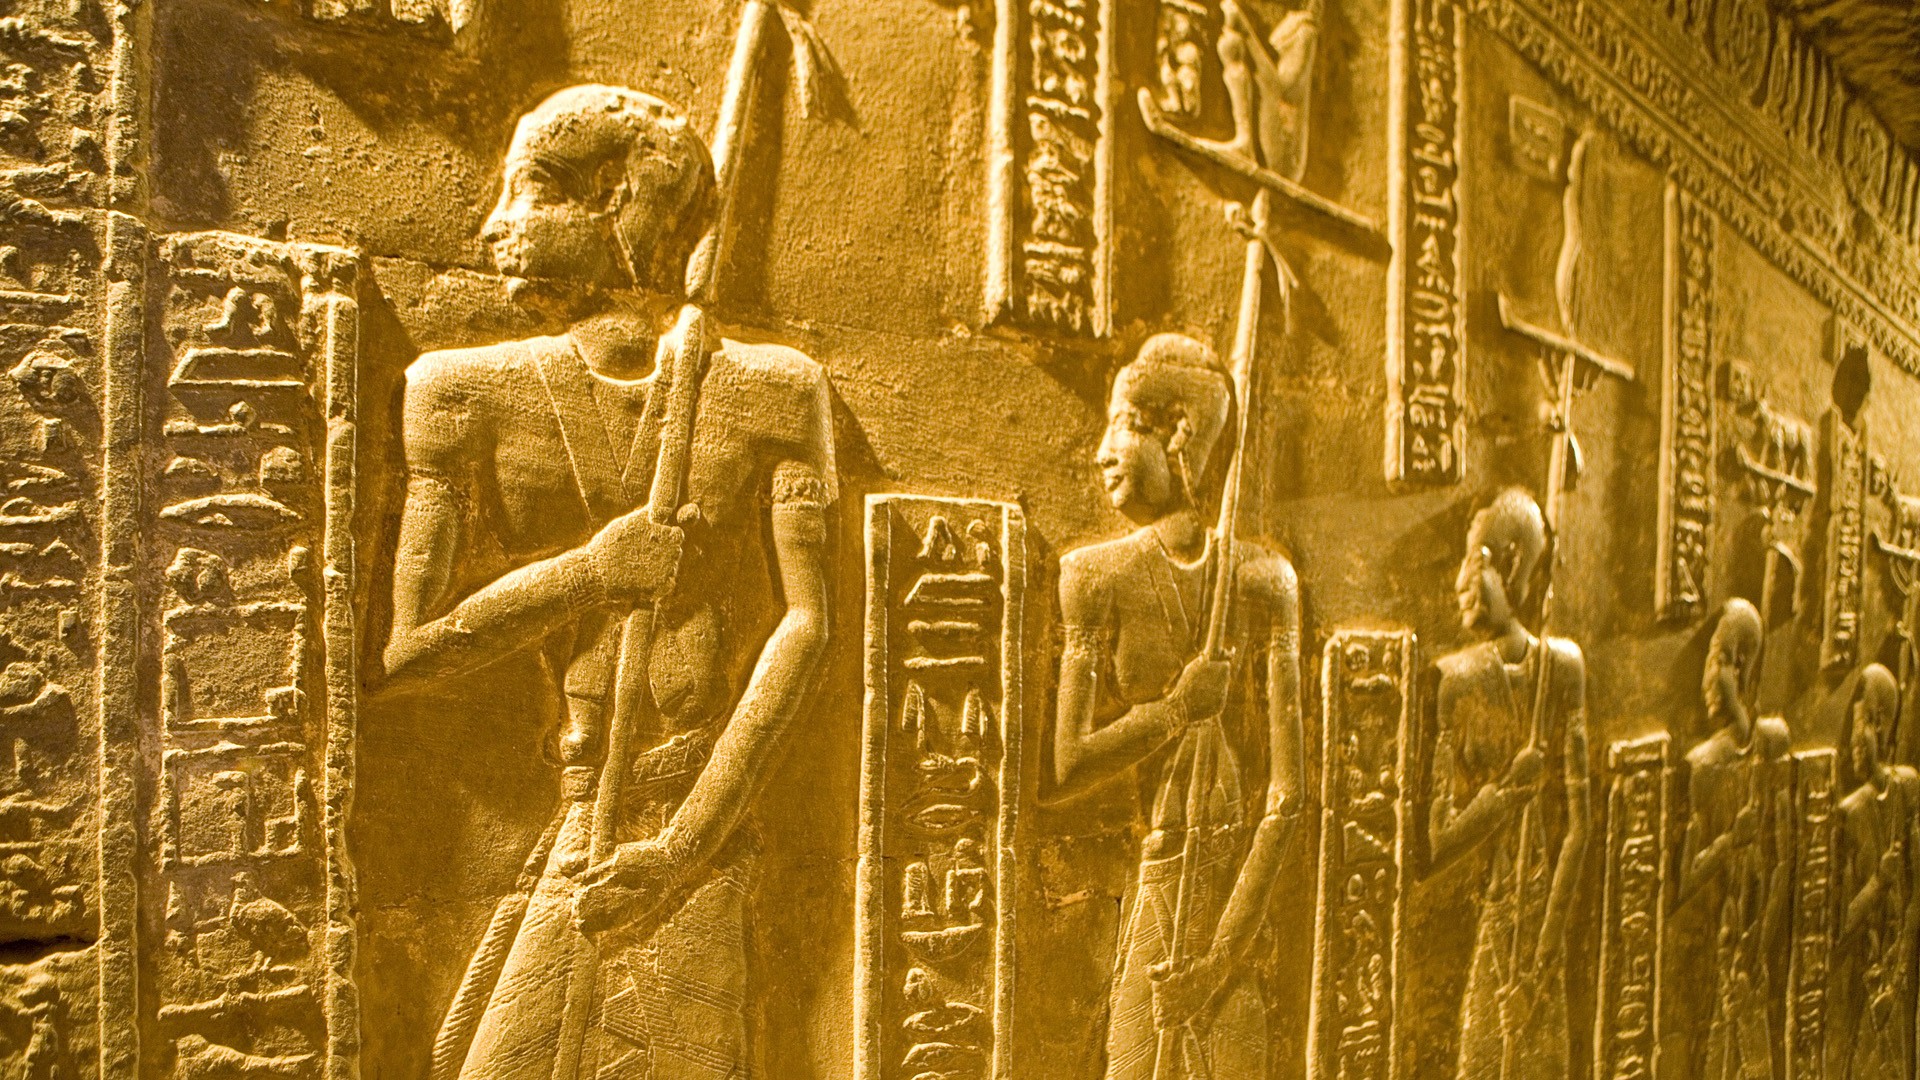 Египет, храмы - обои на рабочий стол